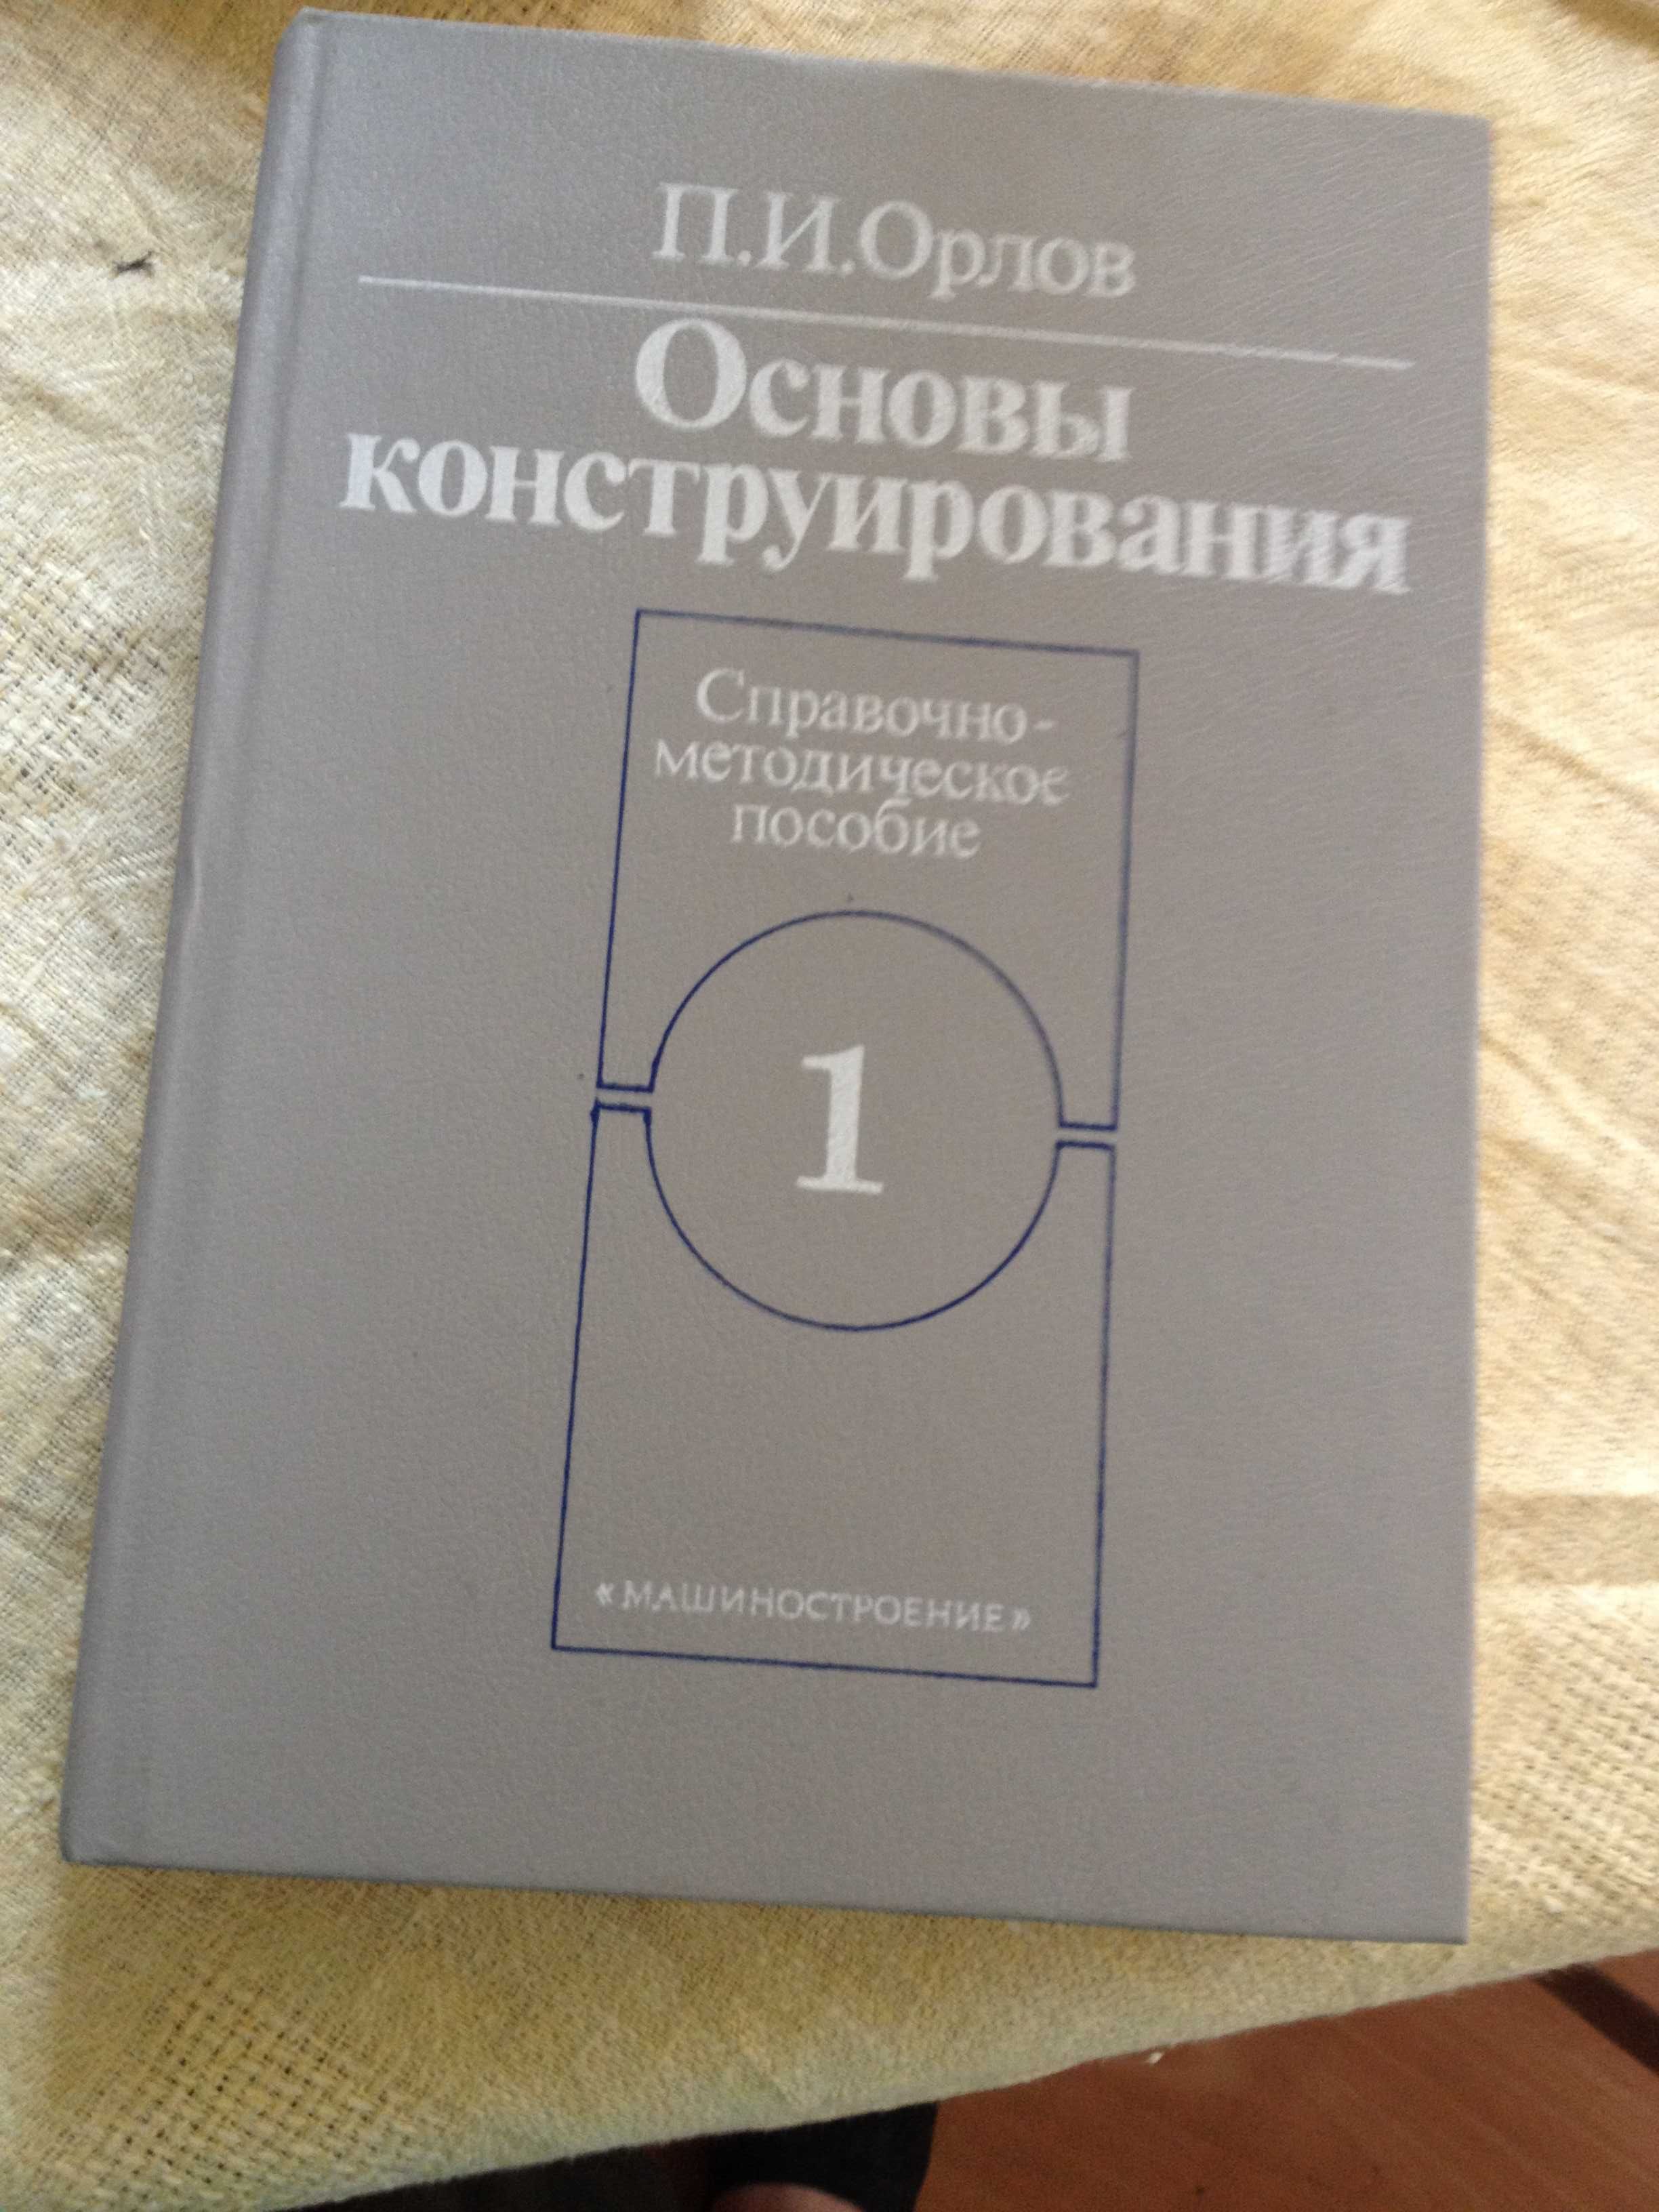 книга Основы конструирования П.И. Орлов  2-х томник ББК34.42